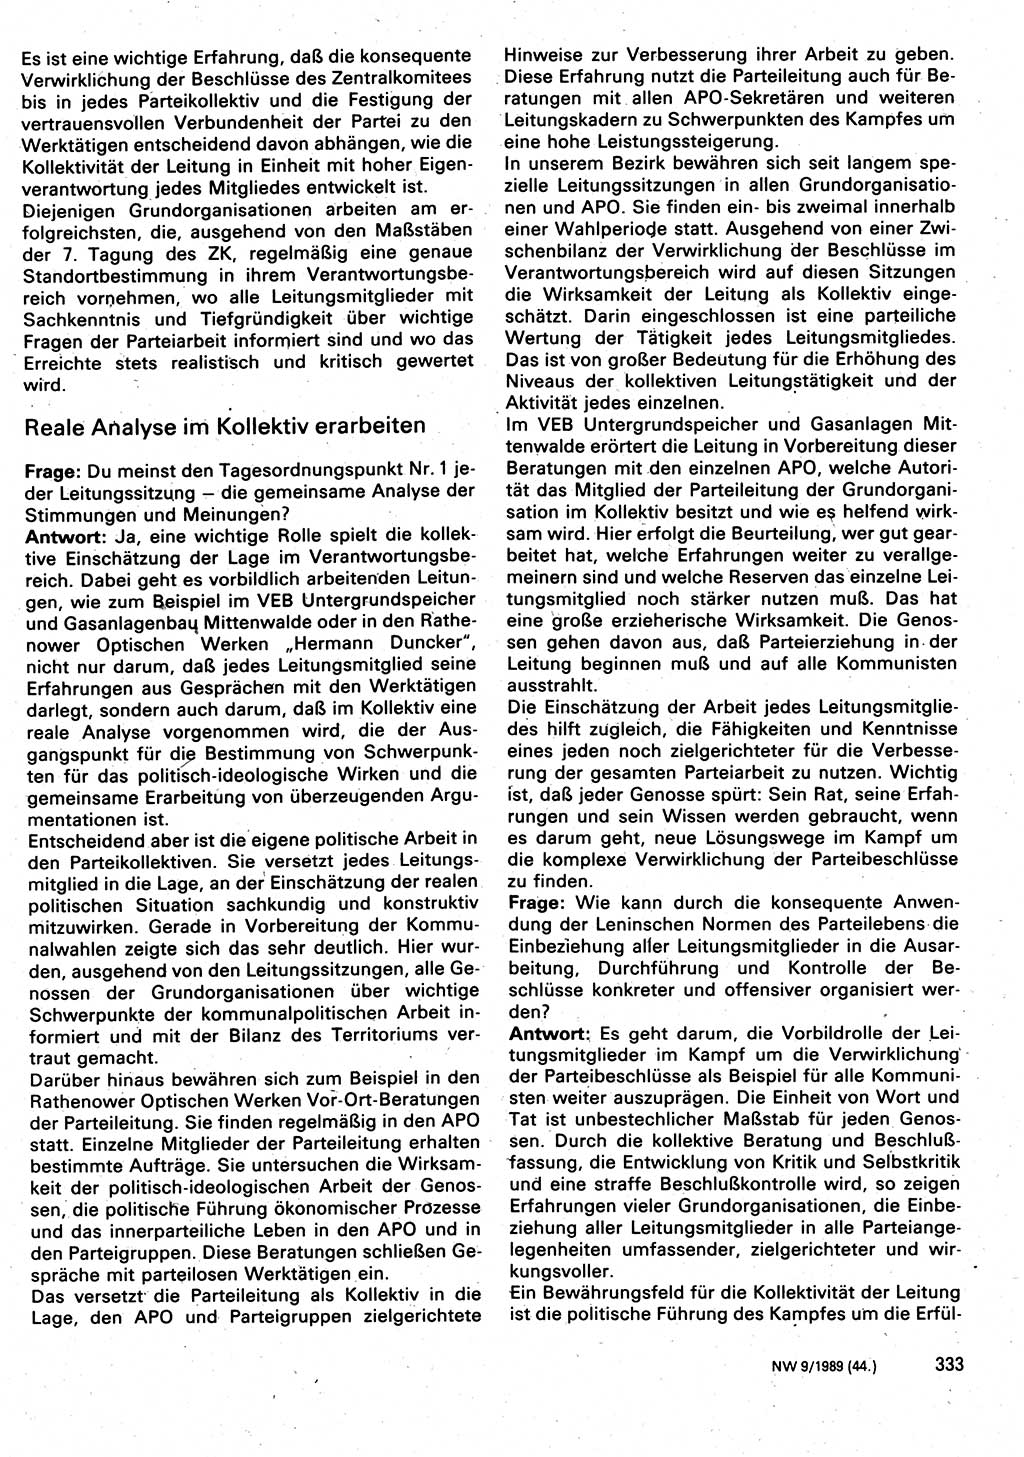 Neuer Weg (NW), Organ des Zentralkomitees (ZK) der SED (Sozialistische Einheitspartei Deutschlands) für Fragen des Parteilebens, 44. Jahrgang [Deutsche Demokratische Republik (DDR)] 1989, Seite 333 (NW ZK SED DDR 1989, S. 333)